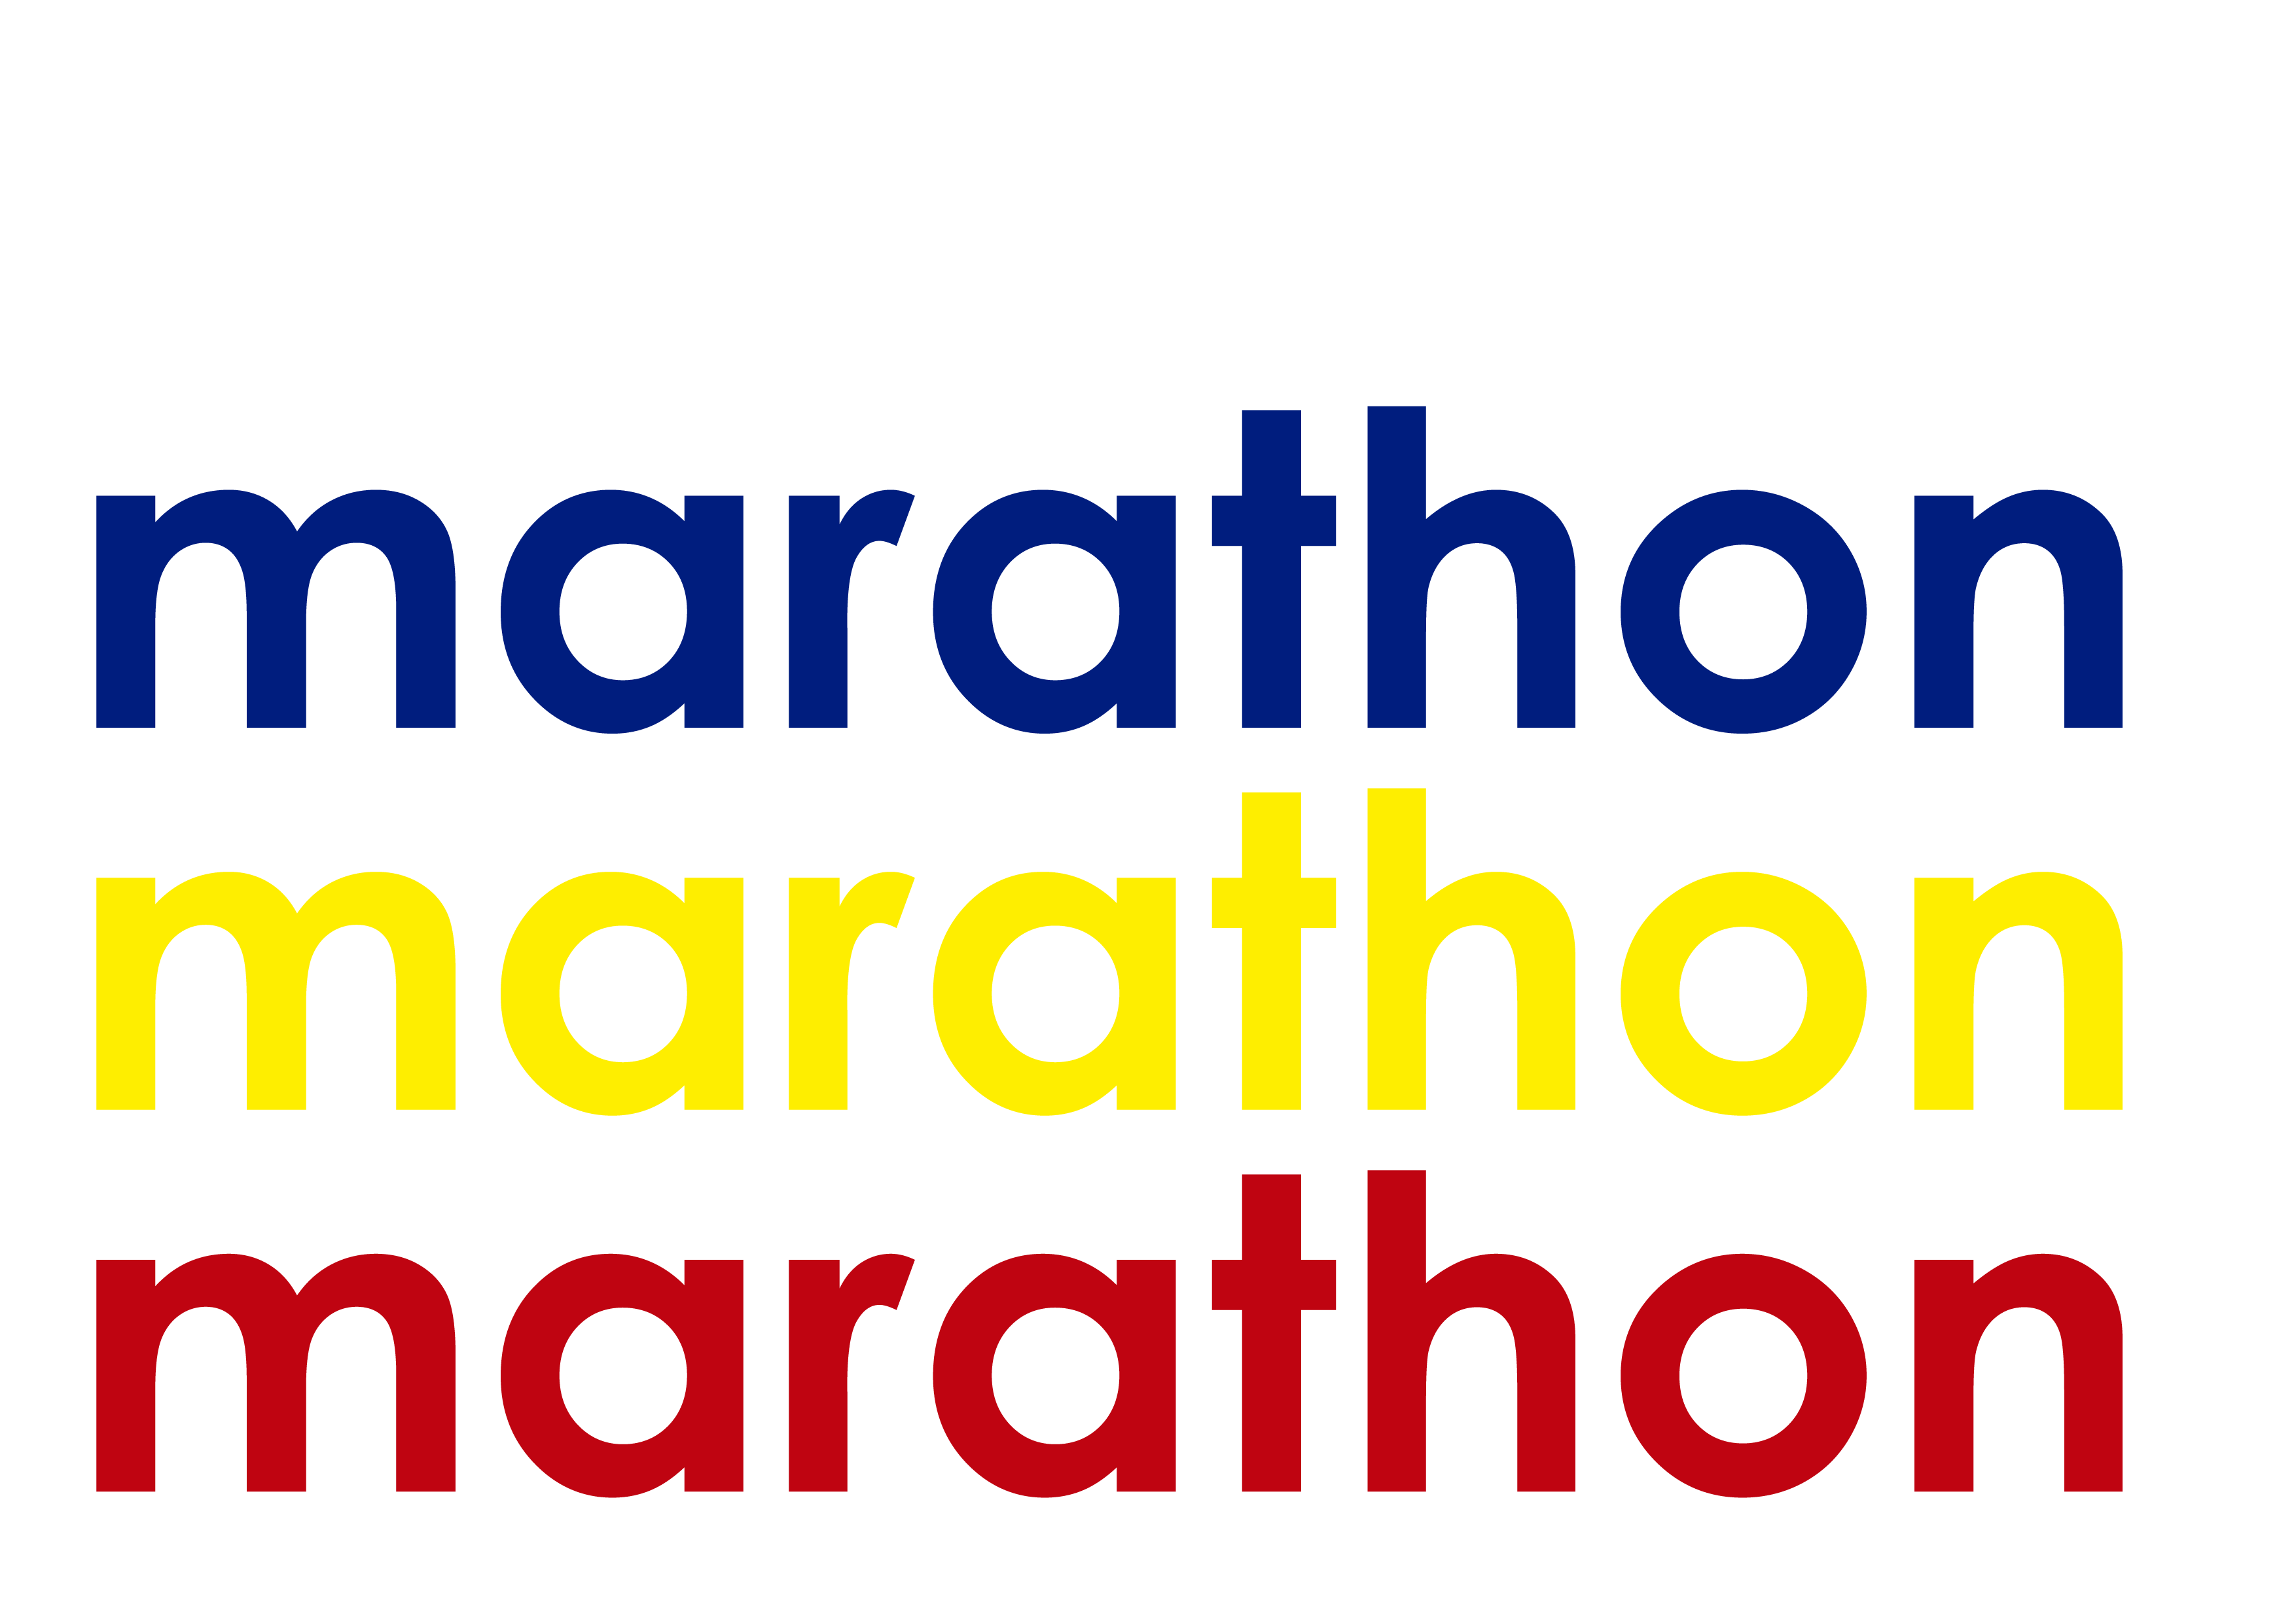 Marthon Logo - Marathon Logos